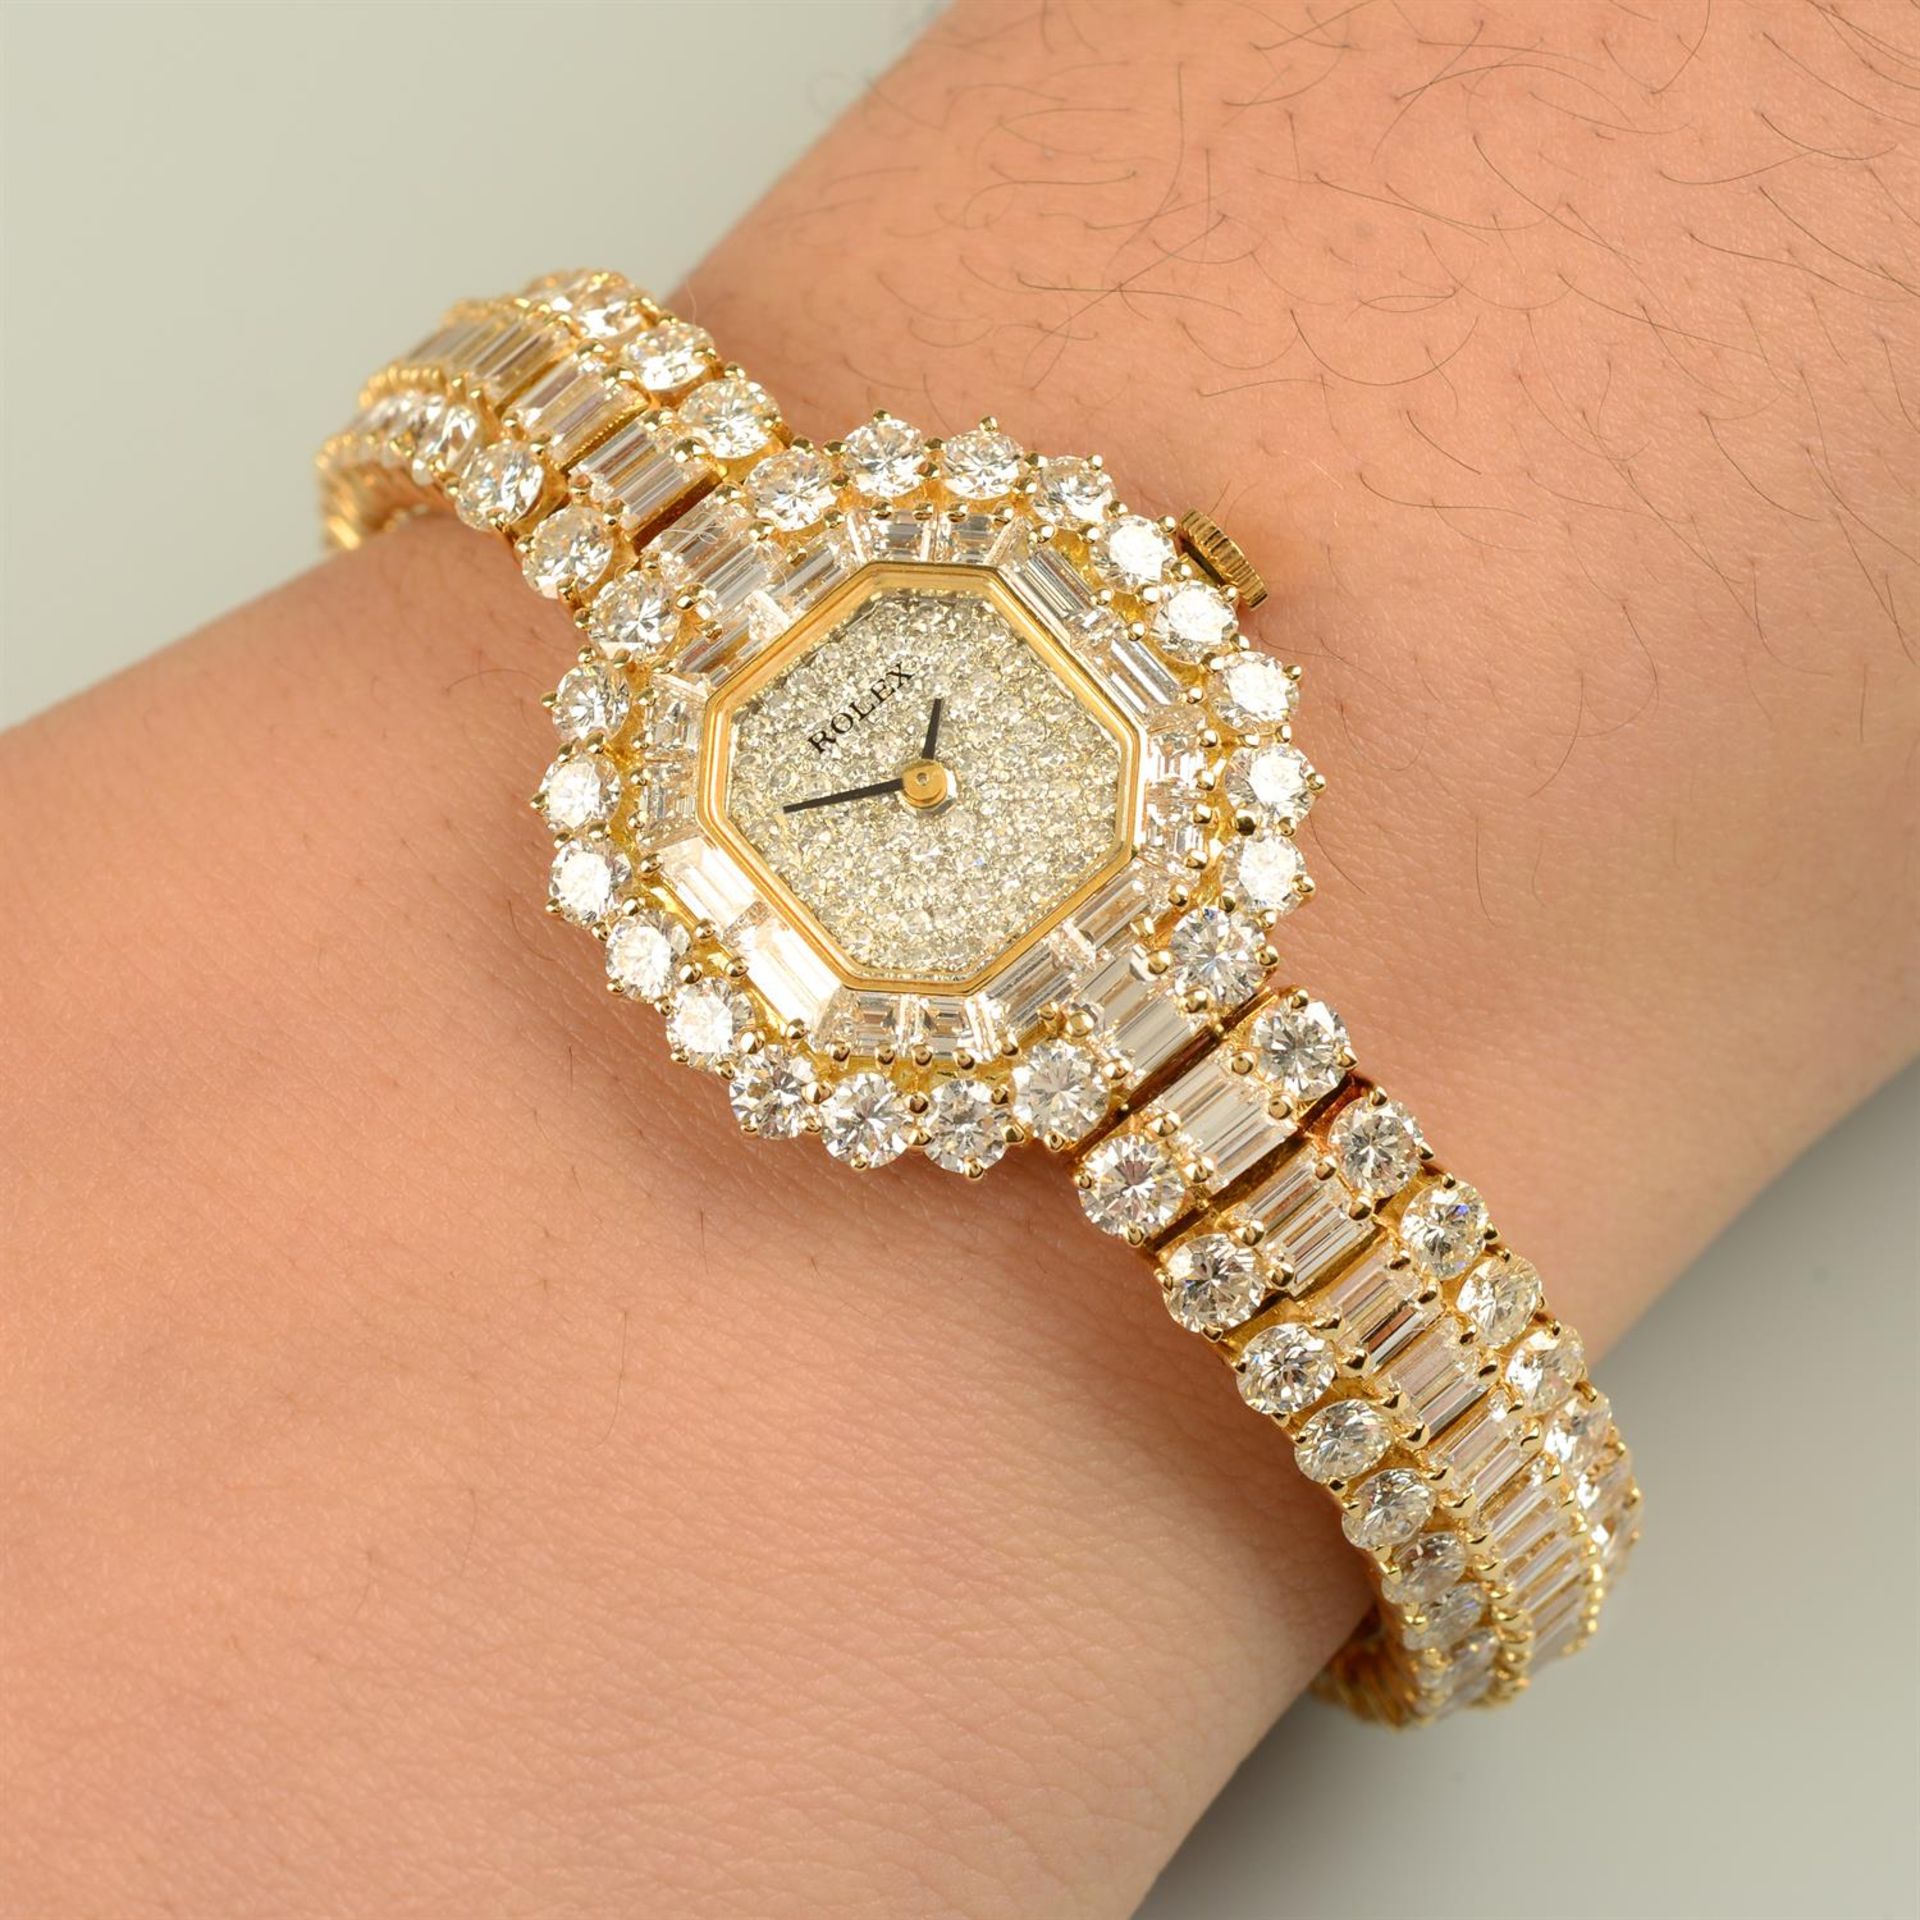 An 18ct gold vari-shape diamond watch, by Rolex.